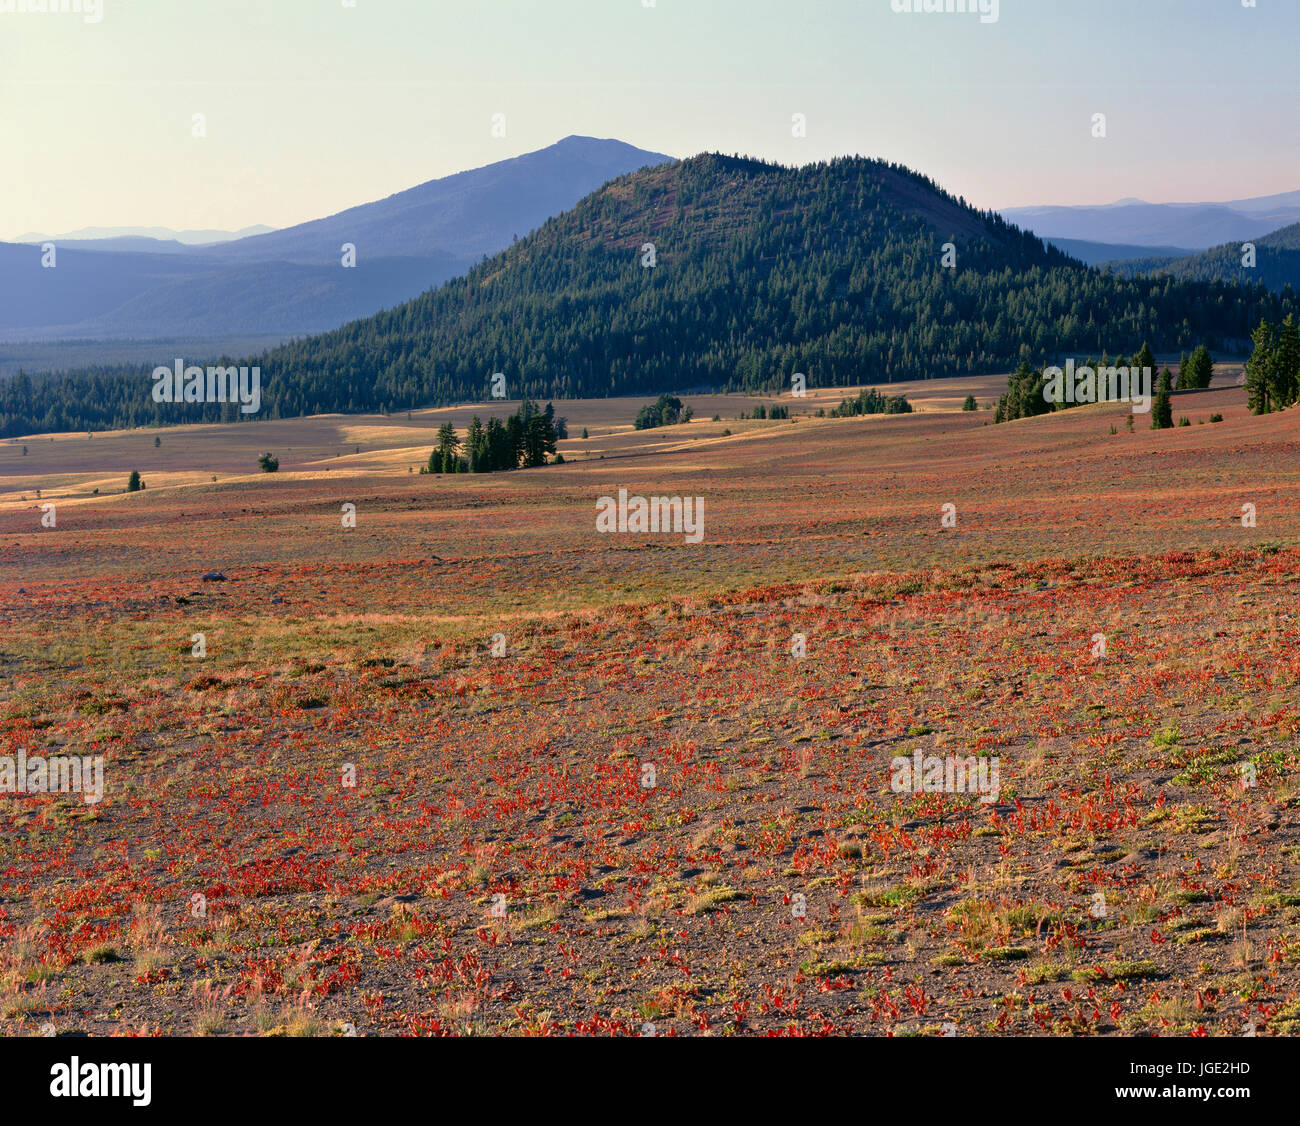 USA, Oregon, el Parque Nacional del Lago del Cráter, cono rojo, un cono de escoria, con vistas a la llanura de piedra pómez y cenizas, mientras que el Monte Bailey se eleva en la distancia. Foto de stock